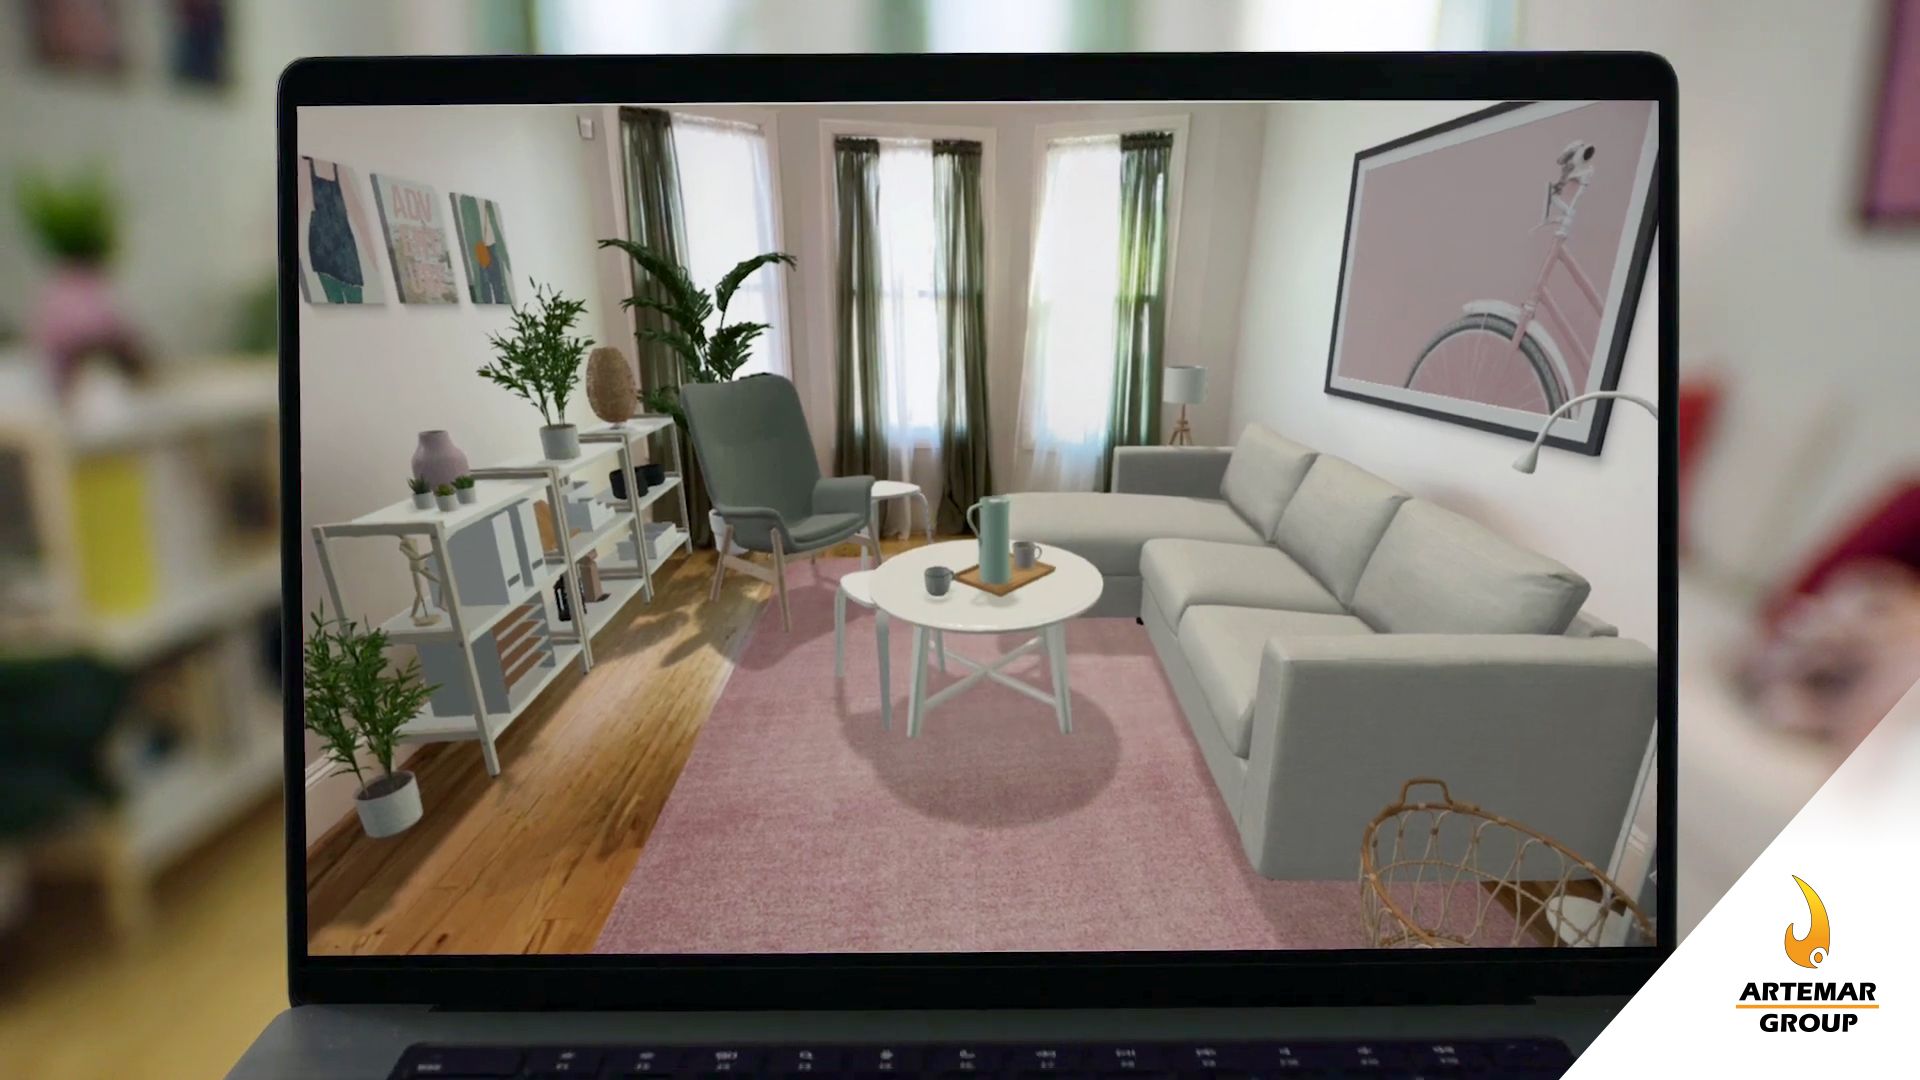 Ikea Kreativ te permite diseñar tu hogar con Realidad Mixta